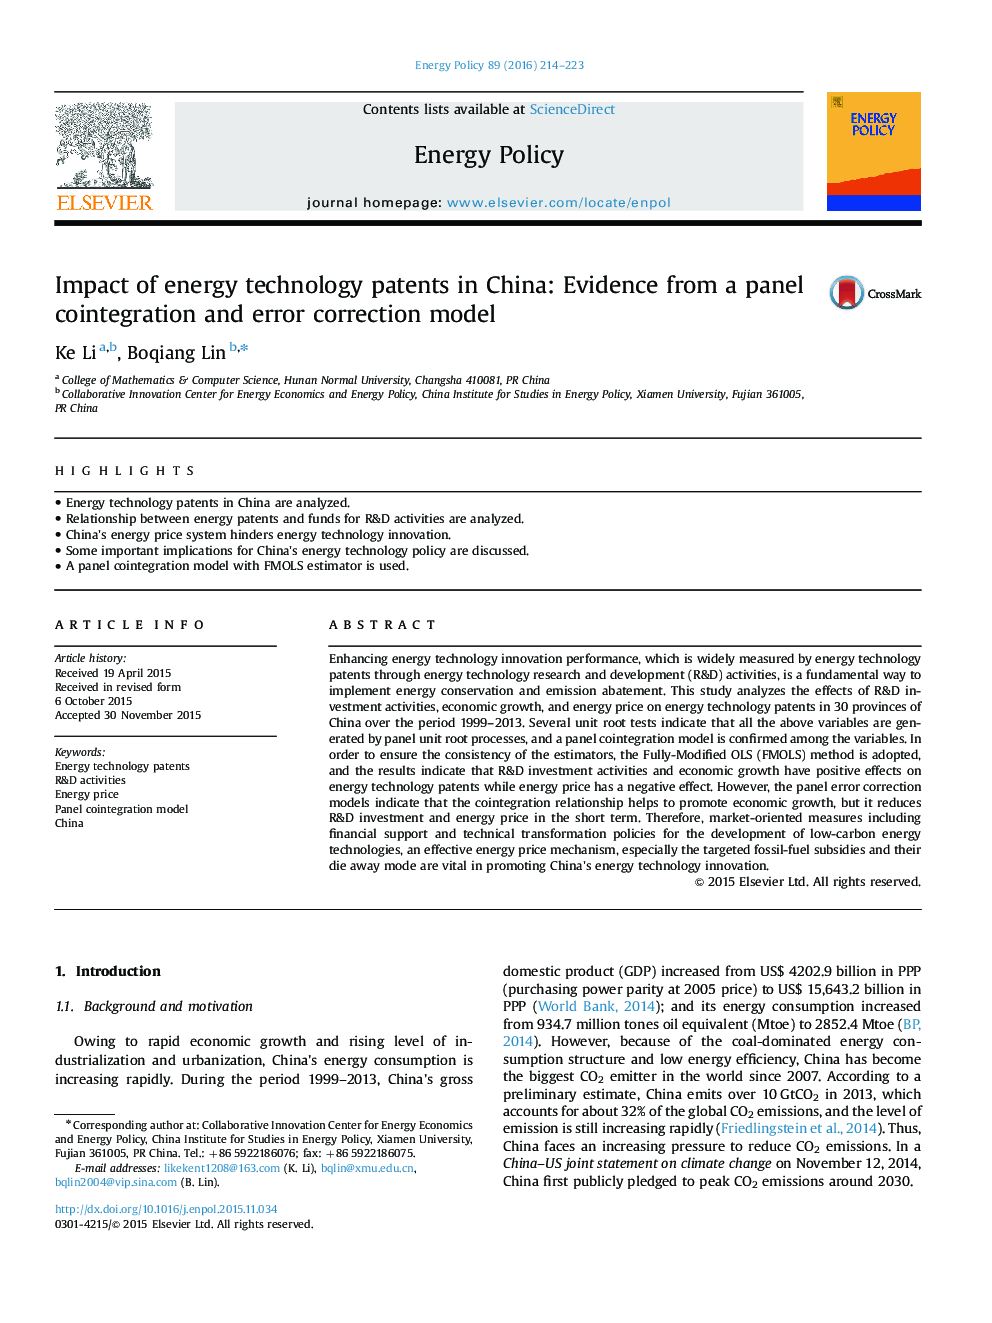 اثرات اختراعات فن آوری انرژی در چین: شواهد از یک مدل سازگاری با پانل و مدل تصحیح خطا 